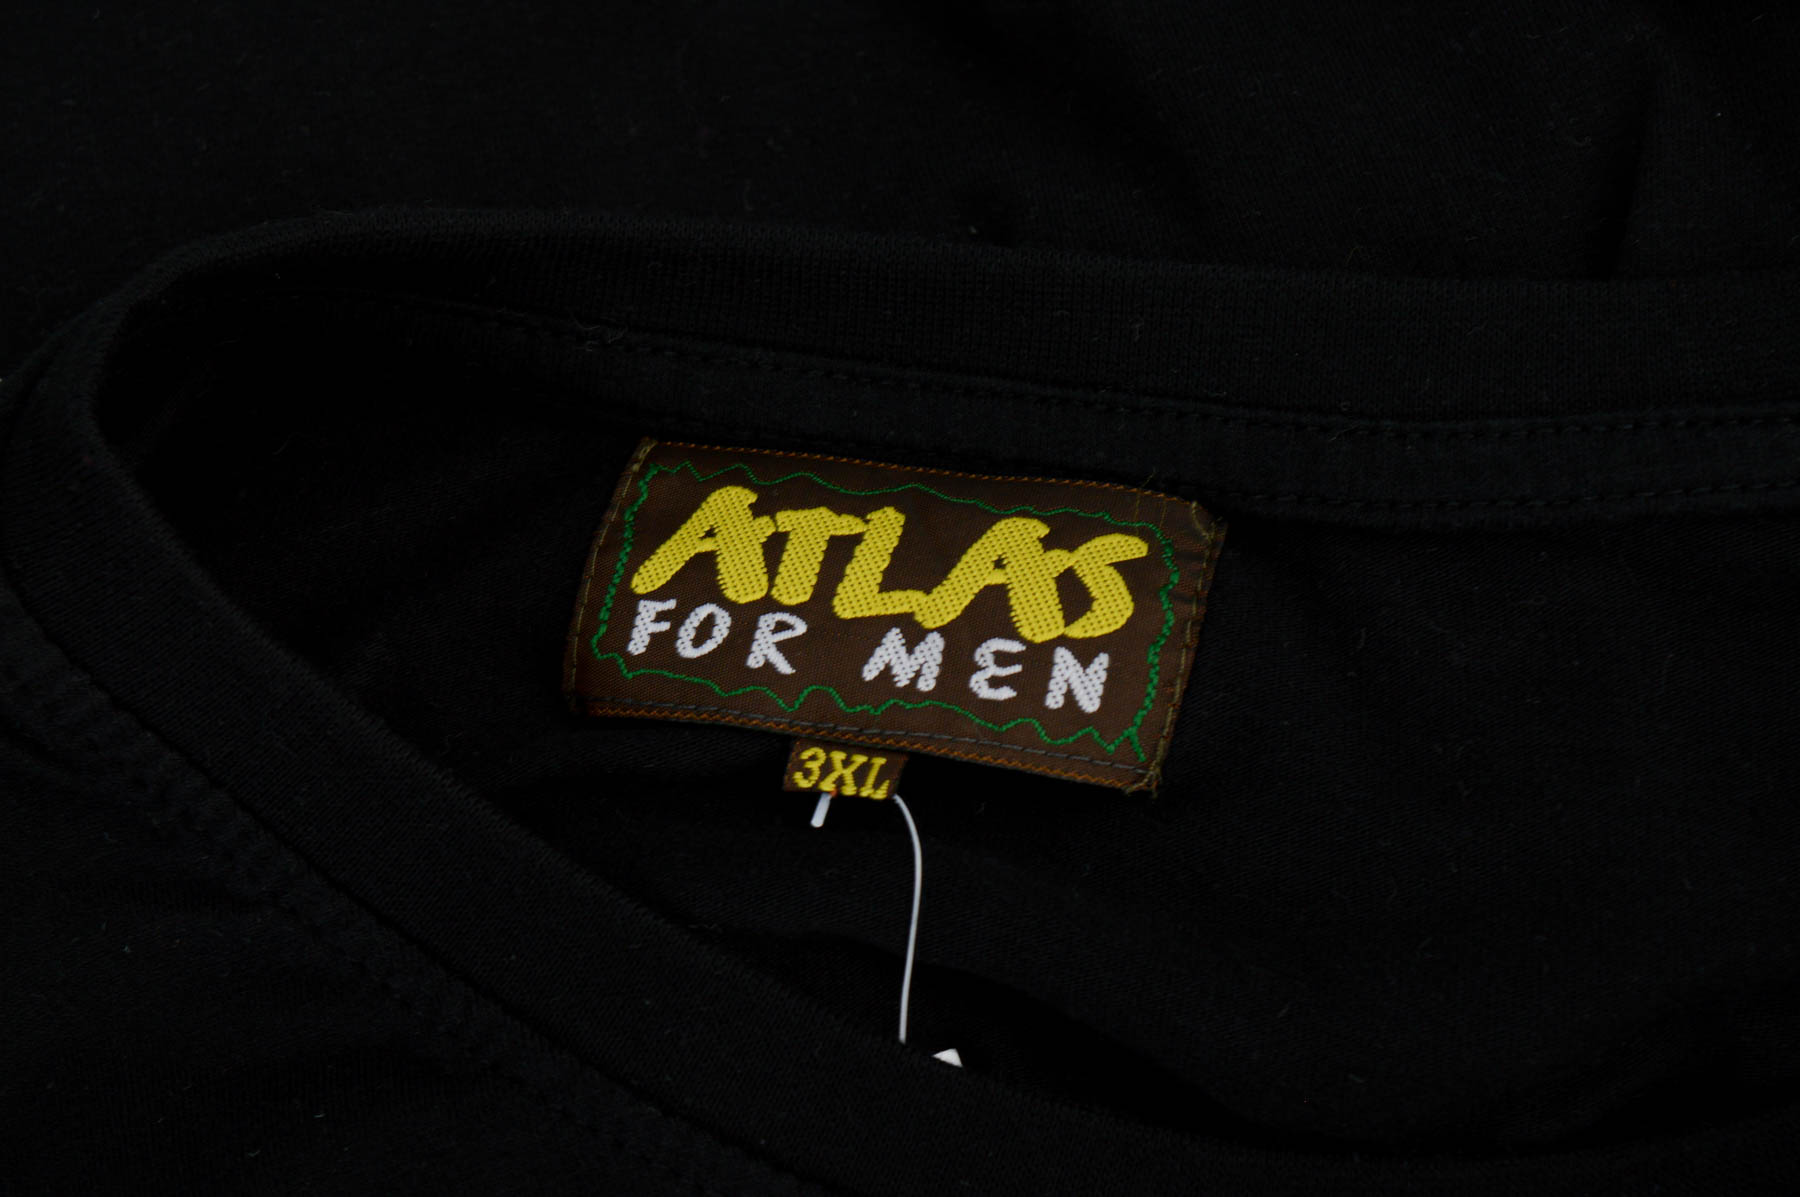 Bluză pentru bărbați - ATLAS for MEN - 2